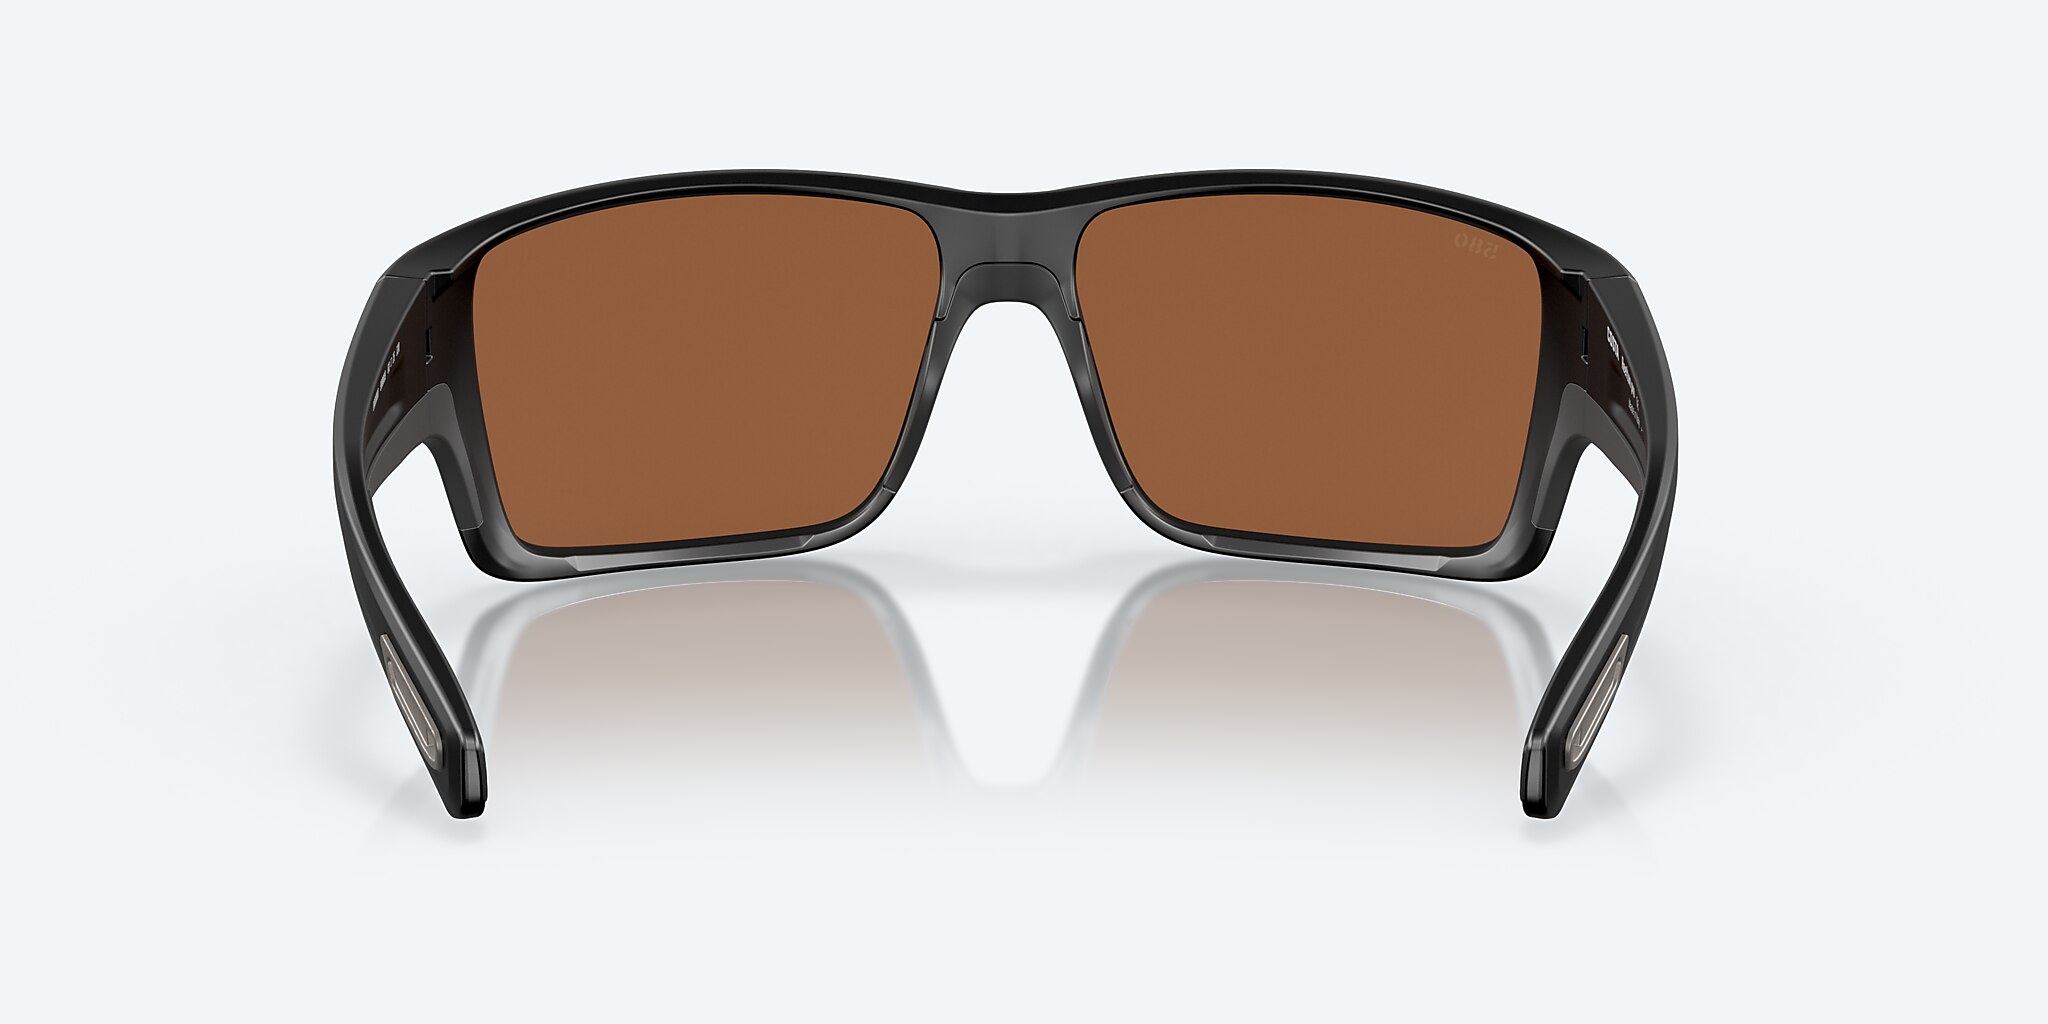 Reefton PRO Polarized Sunglasses in Copper Silver Mirror | Costa Del Mar®